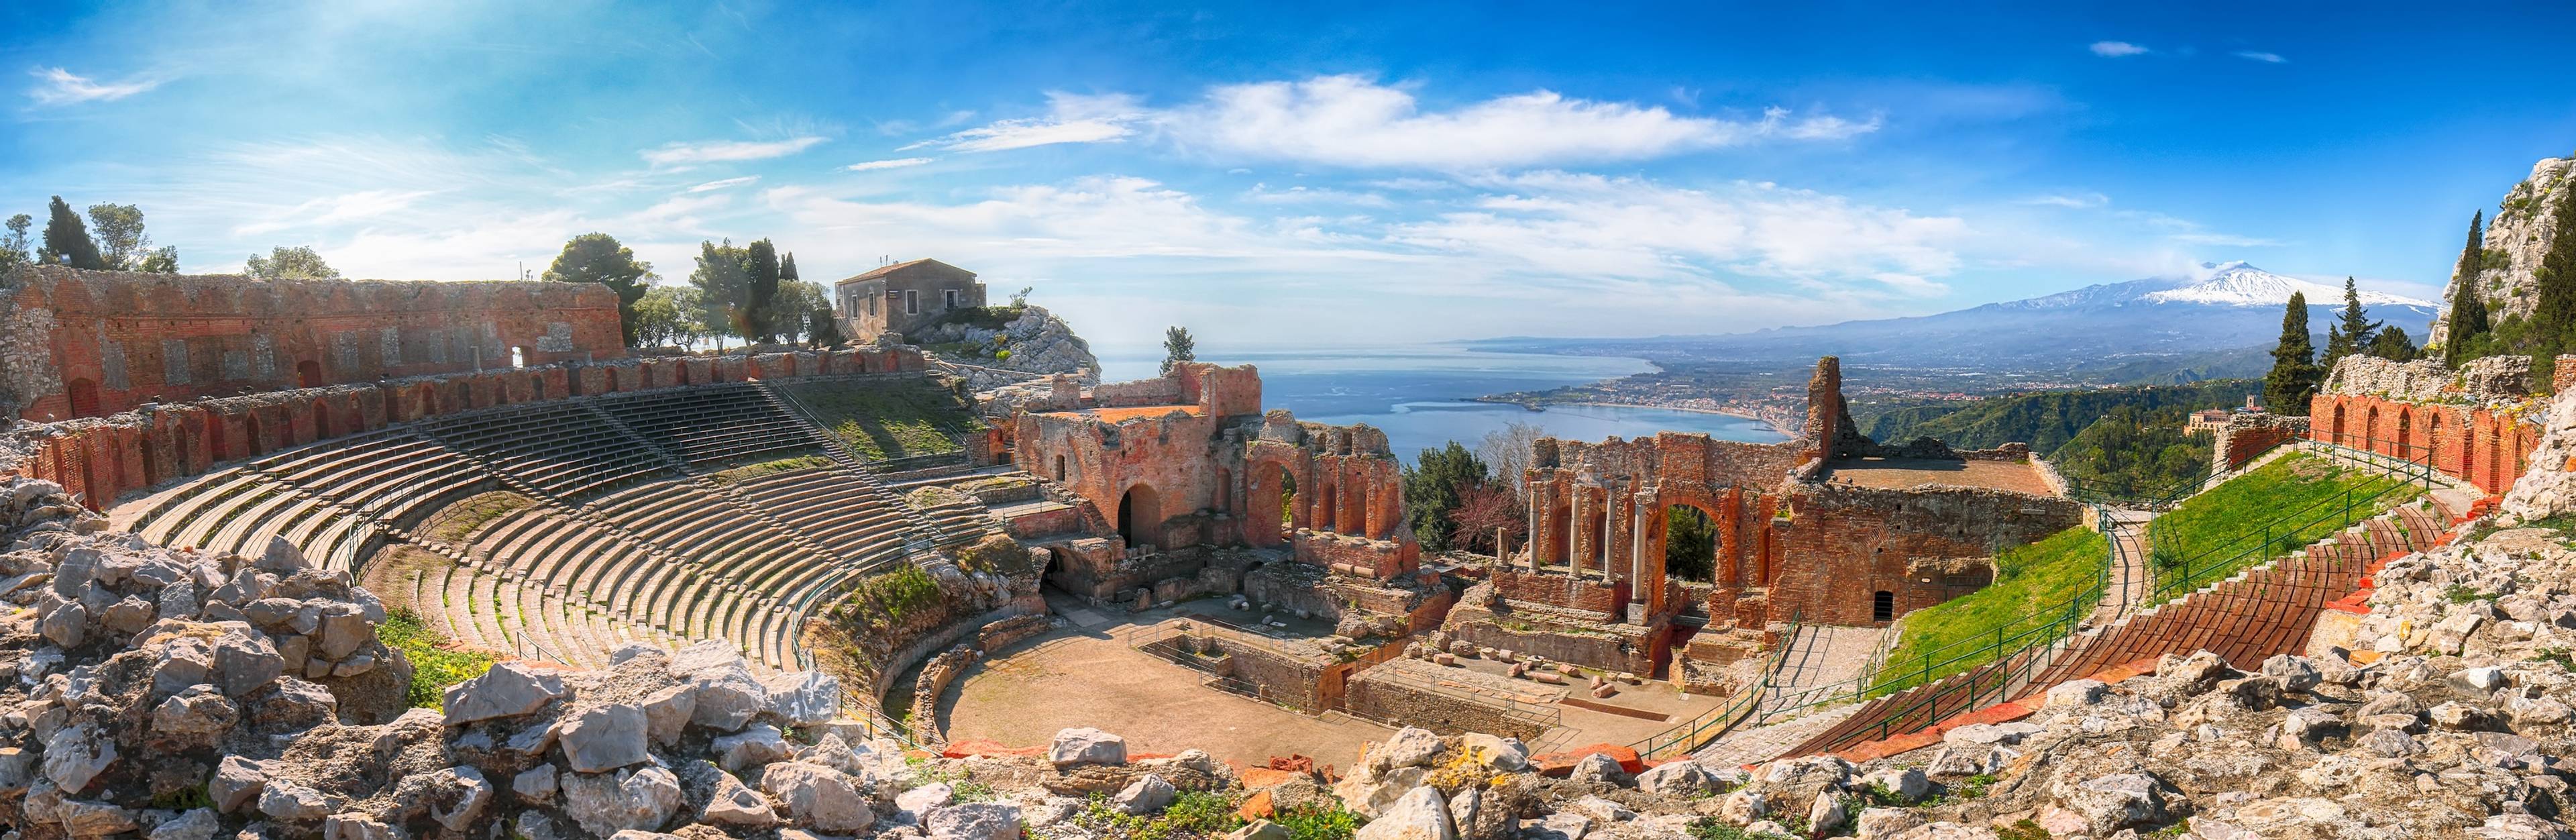 Teatro greco romano di Taormina